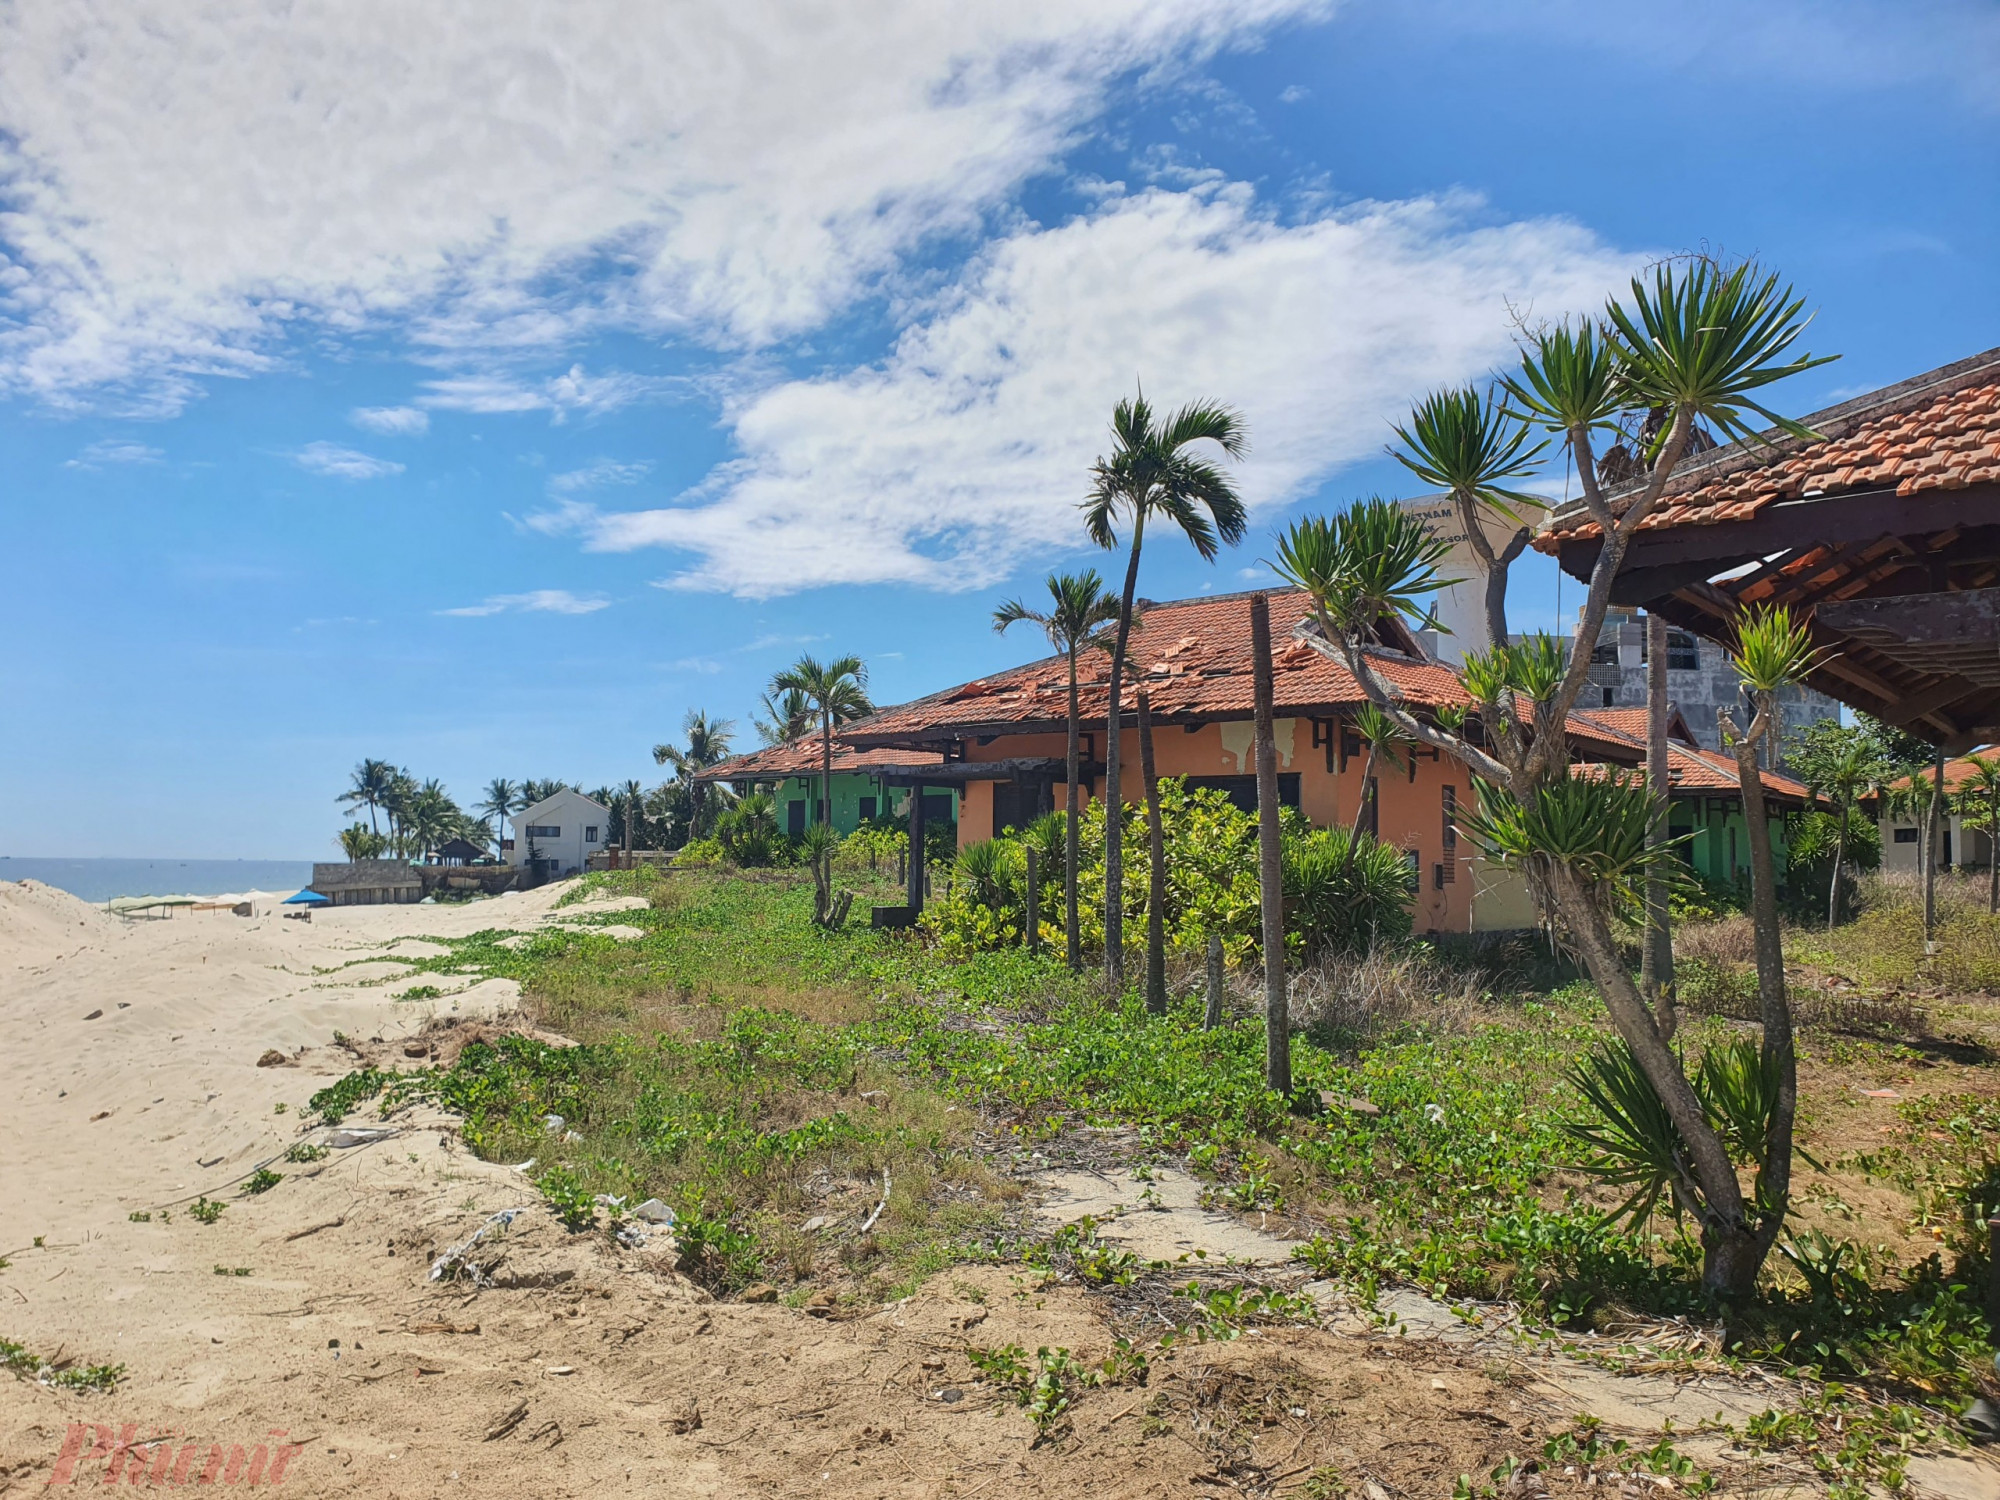 Khu nghỉ dưỡng Tropical Beach Hoi An Resort được thiết kế với tiêu chuẩn 4 sao, lấy cảm hứng từ kiến ​​trúc Indochine truyền thống. Khu nghỉ dưỡng với quy mộ 166 phòng và các biệt thự nằm trong khu vườn bên bãi biển. 